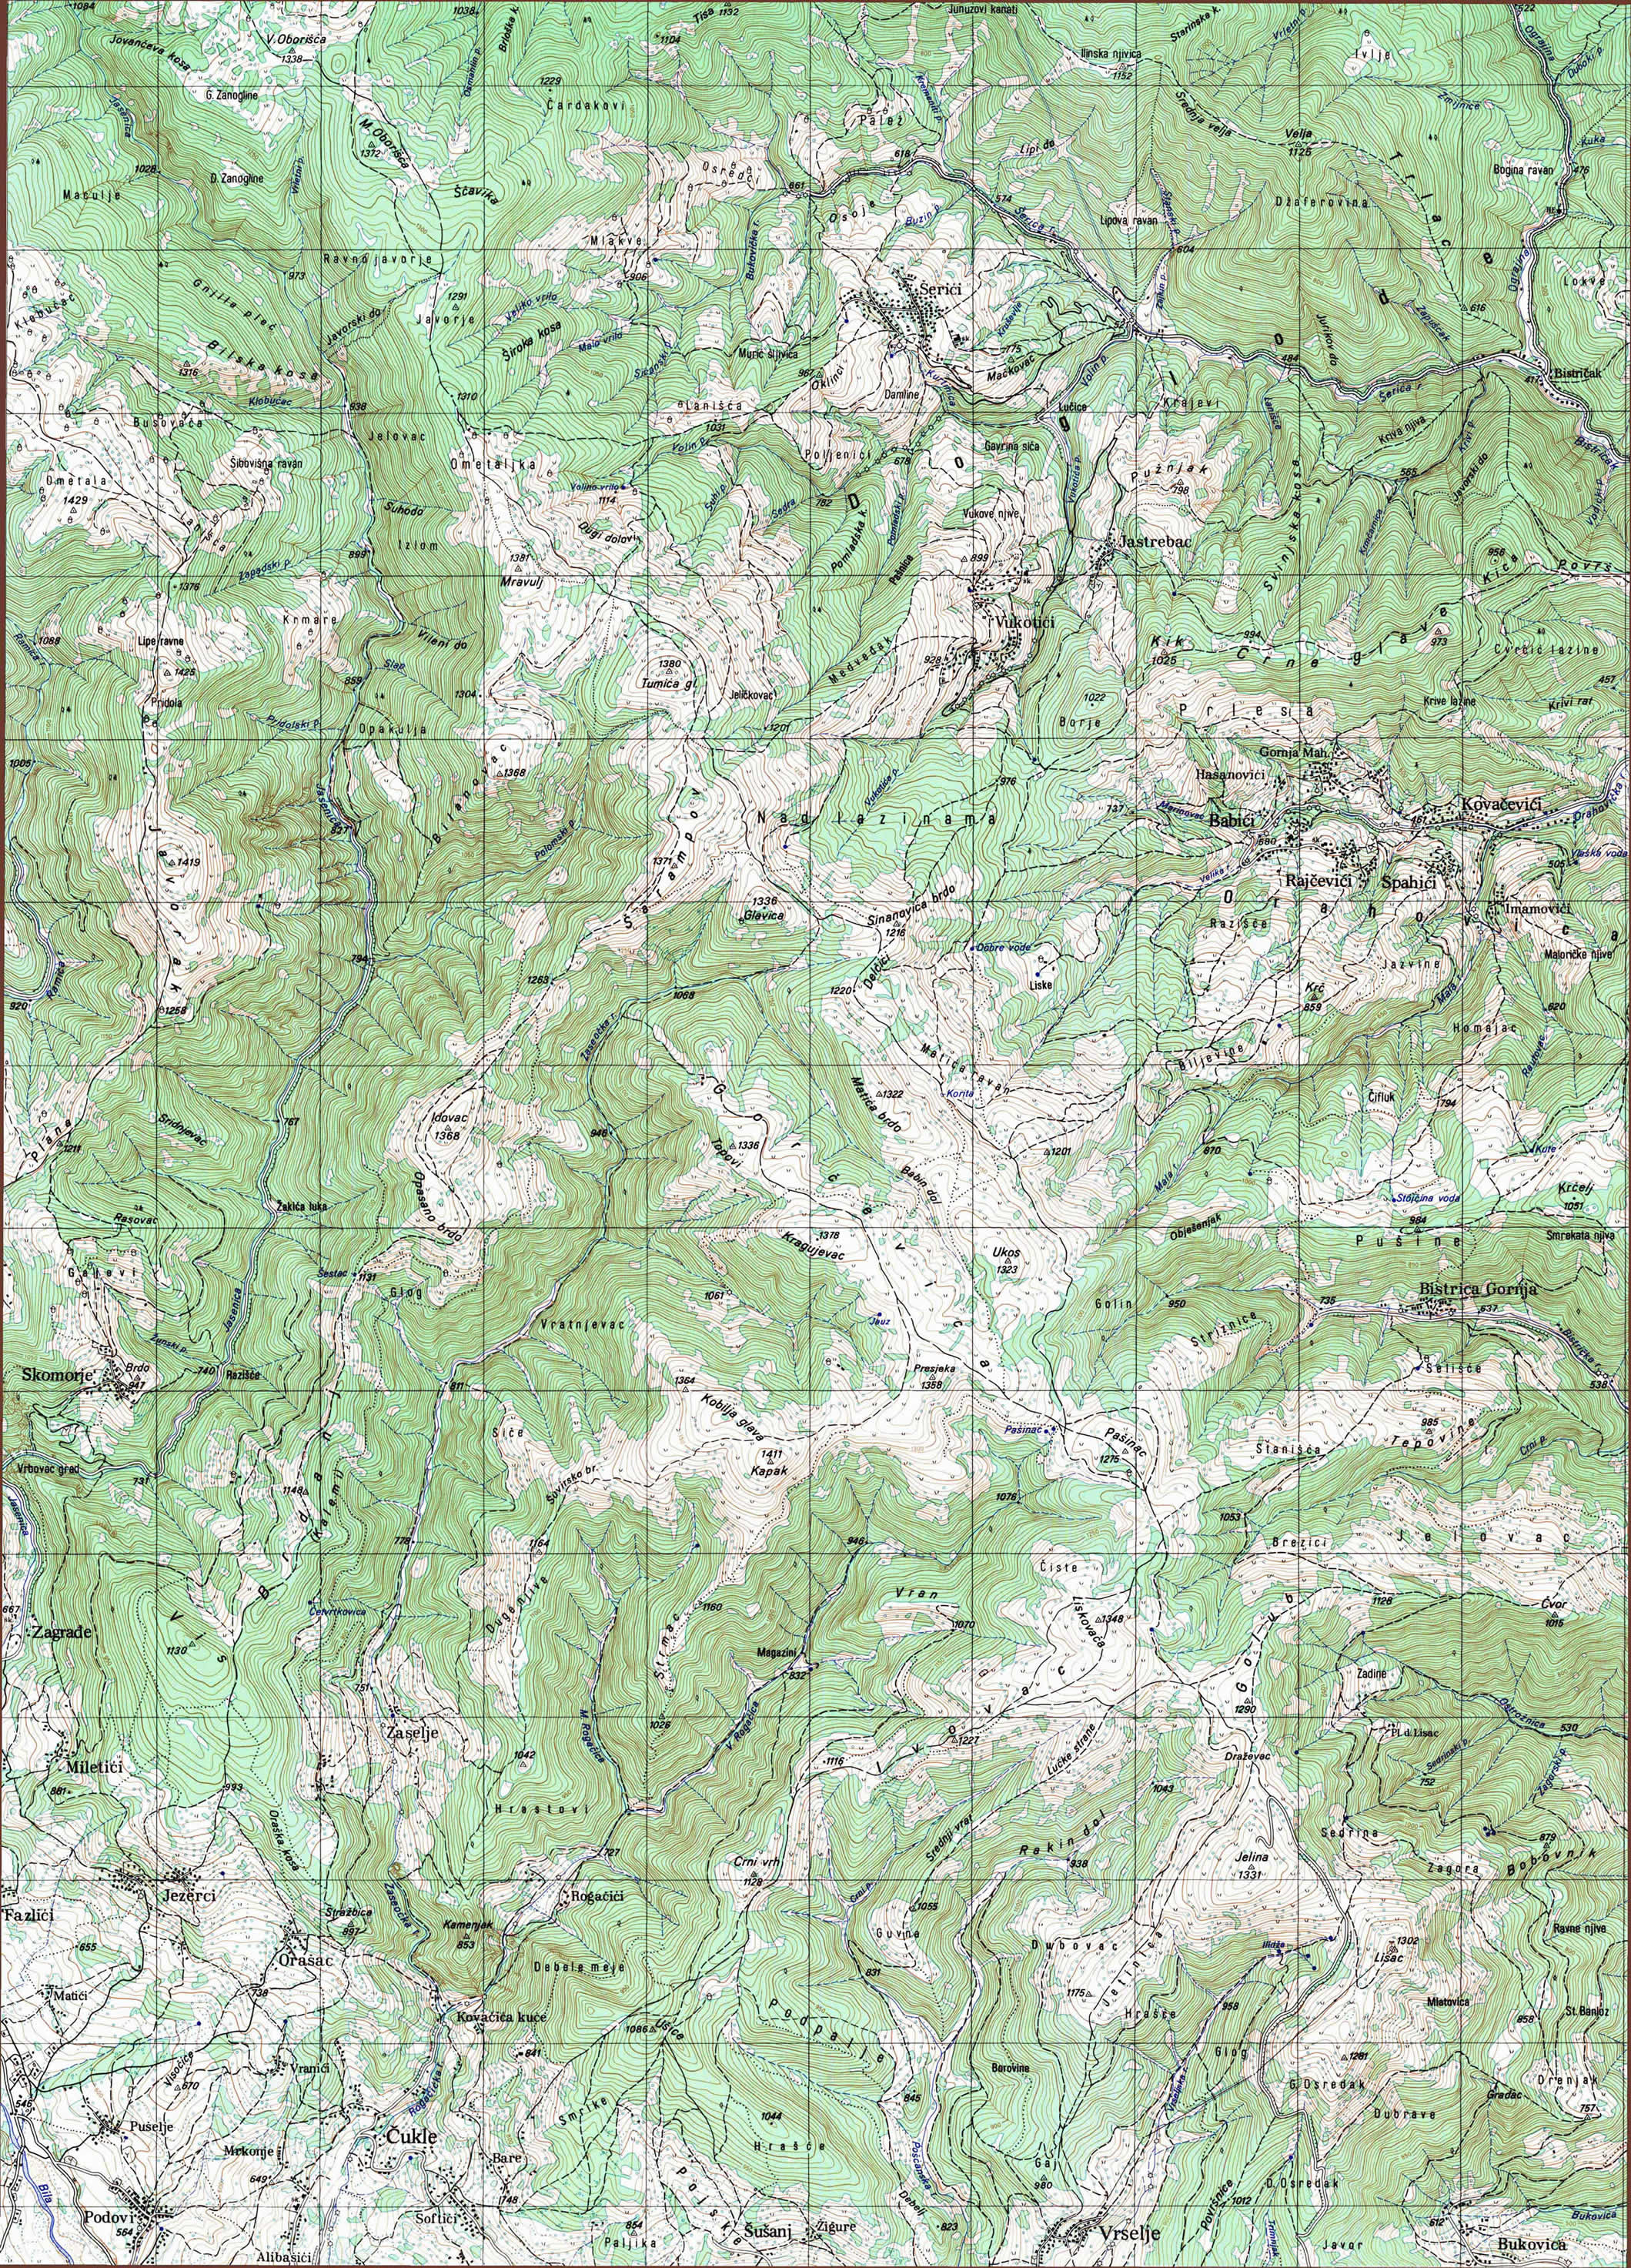  topografska karta srbije 25000 JNA  Serici